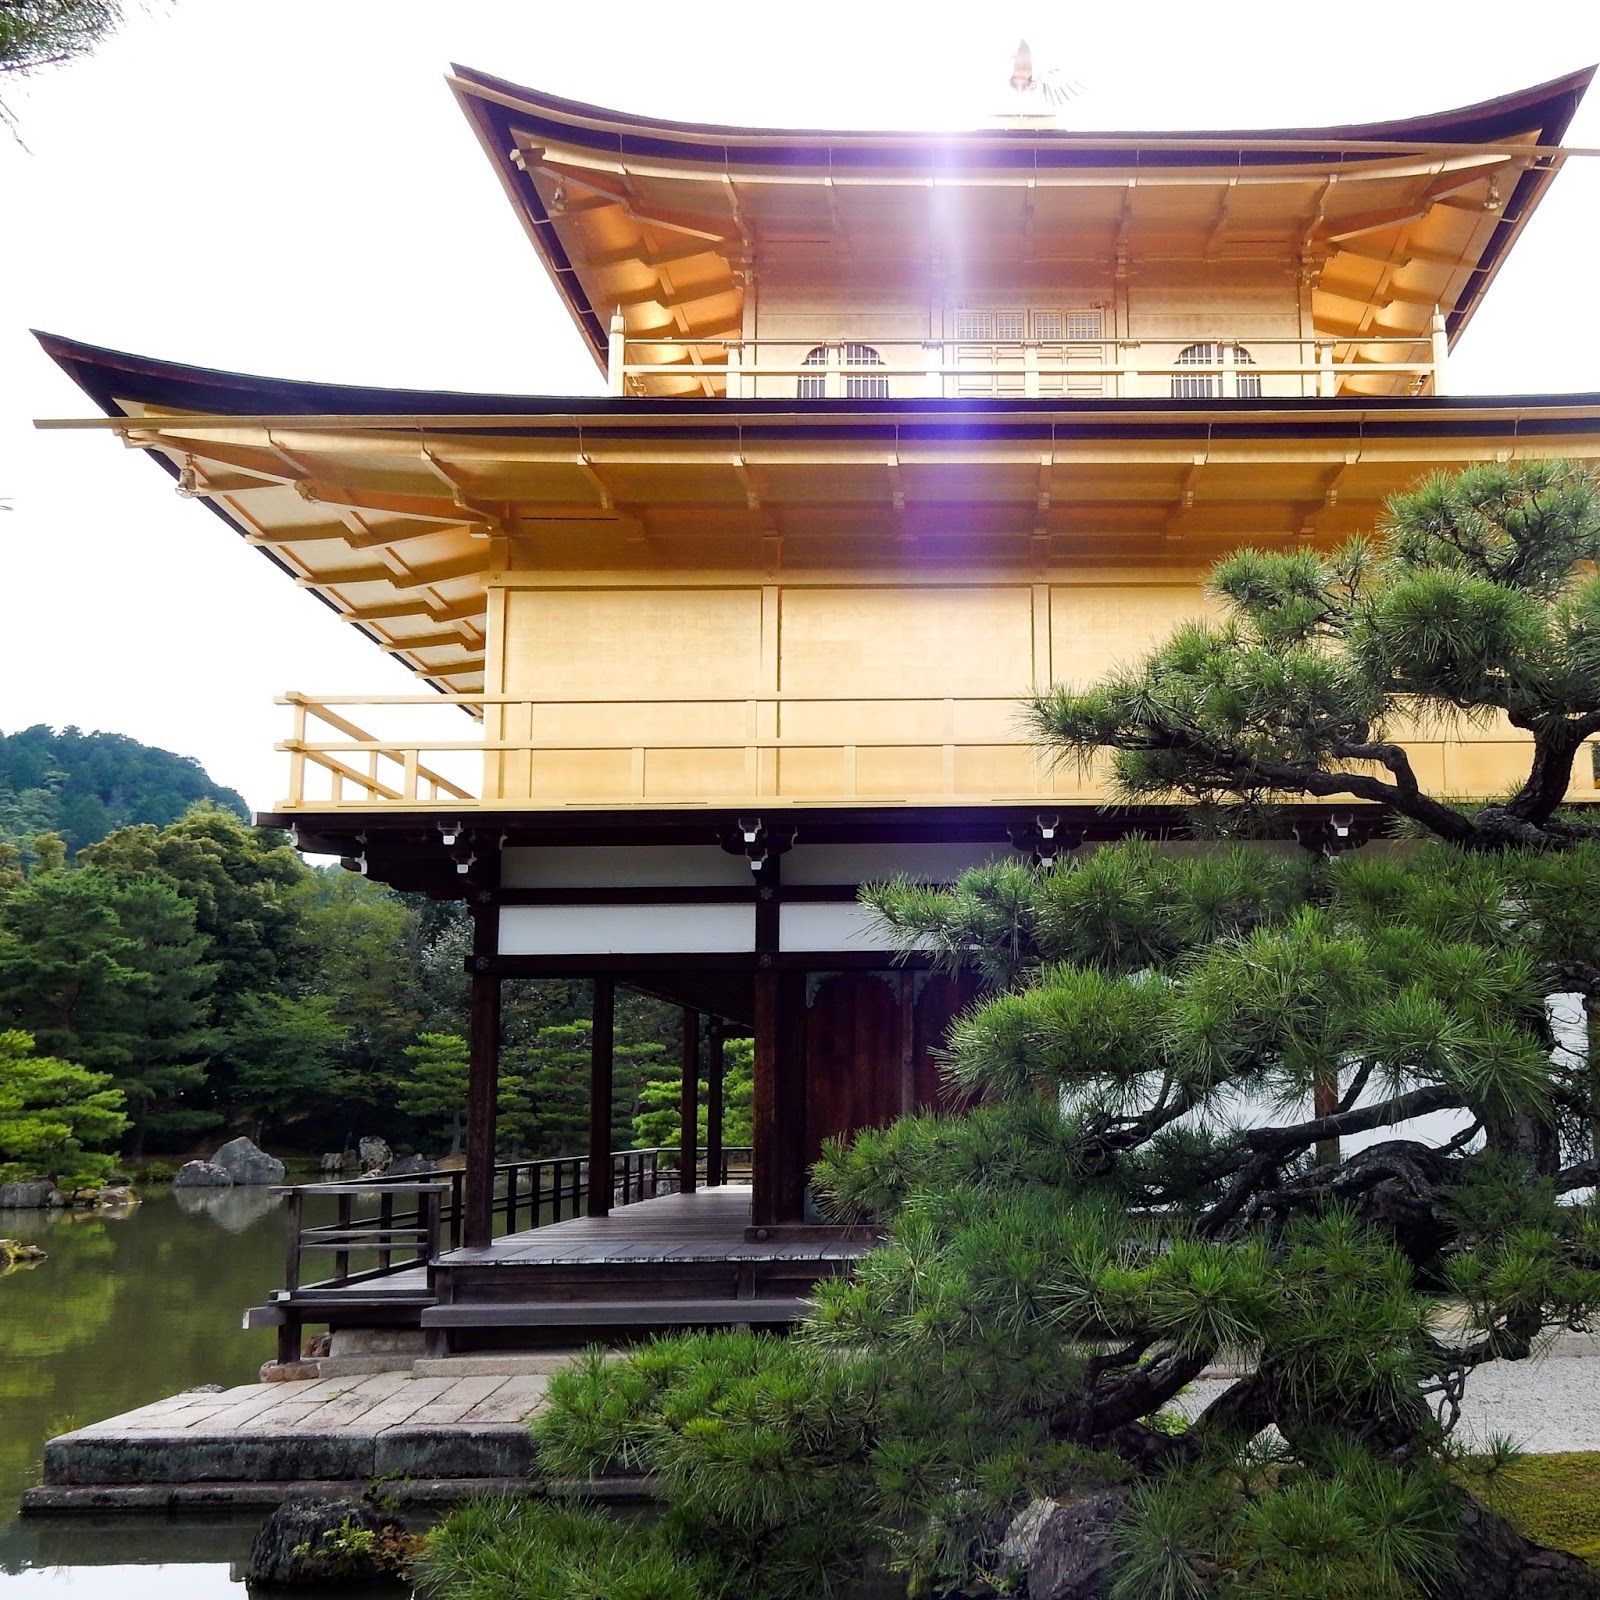 Kinkaku-ji, The Golden Pavilion - A Make Believe World